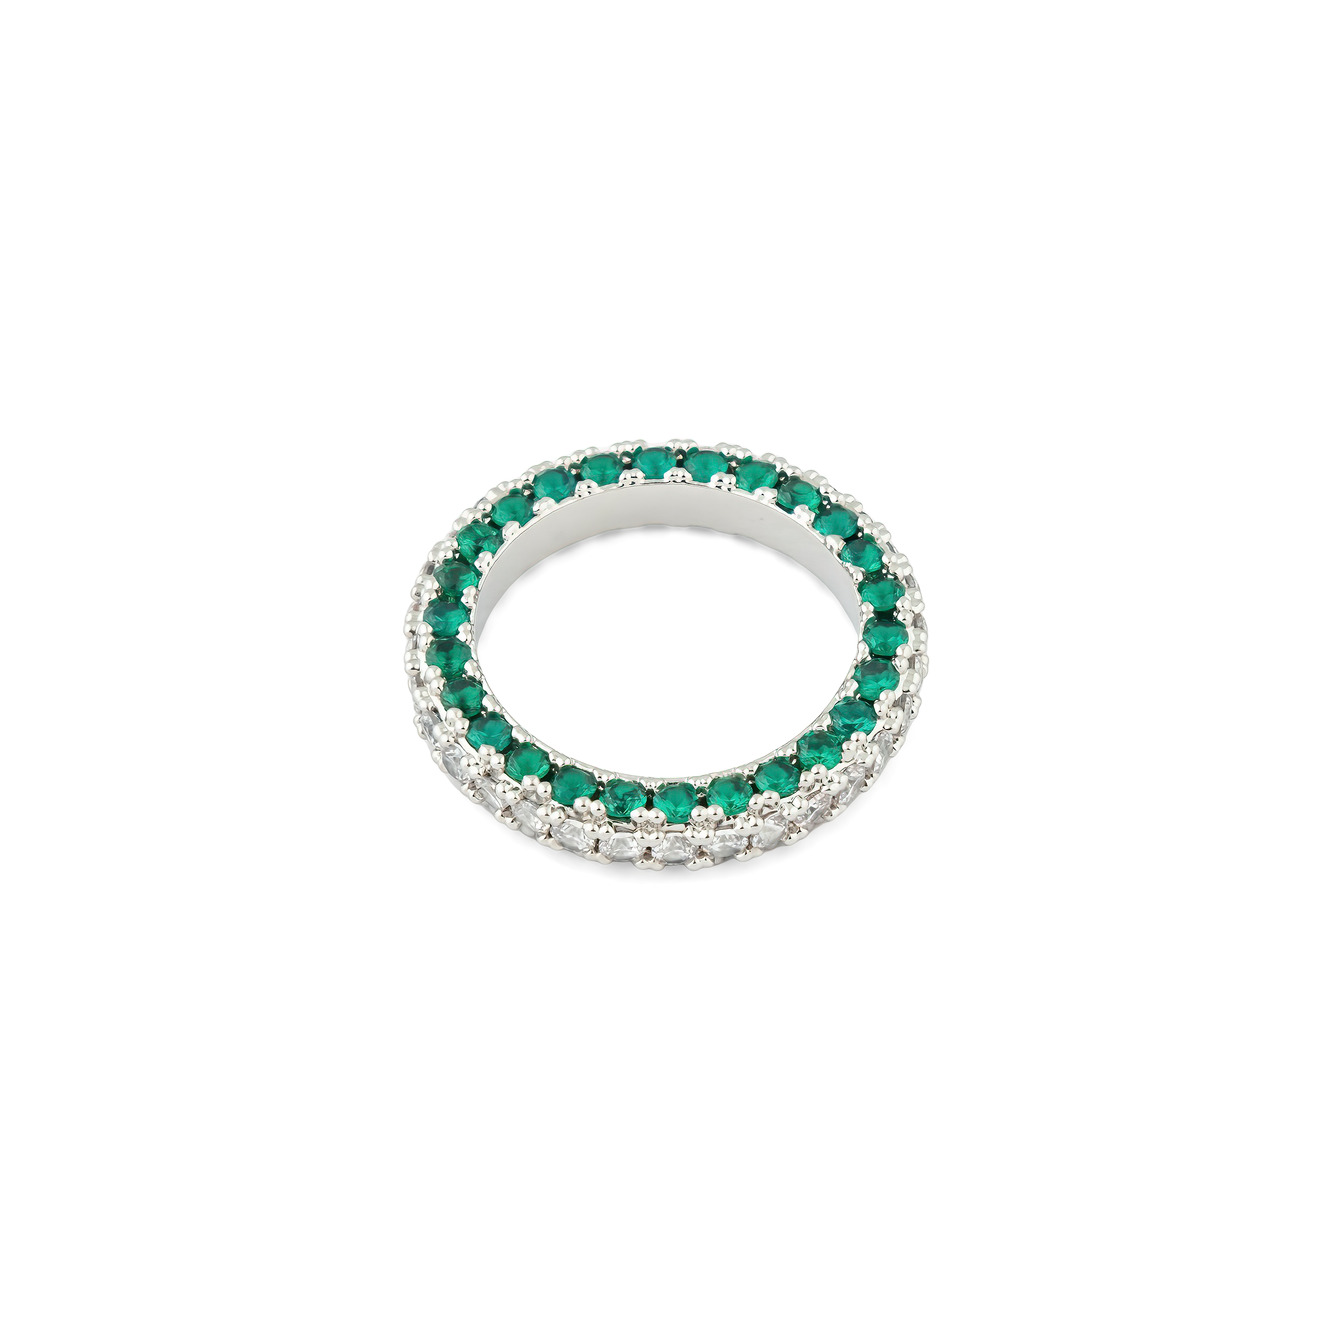 Herald Percy Серебристое кольцо с белыми и зелеными кристаллами herald percy серебристое кольцо из сердец с белыми и зелеными кристаллами